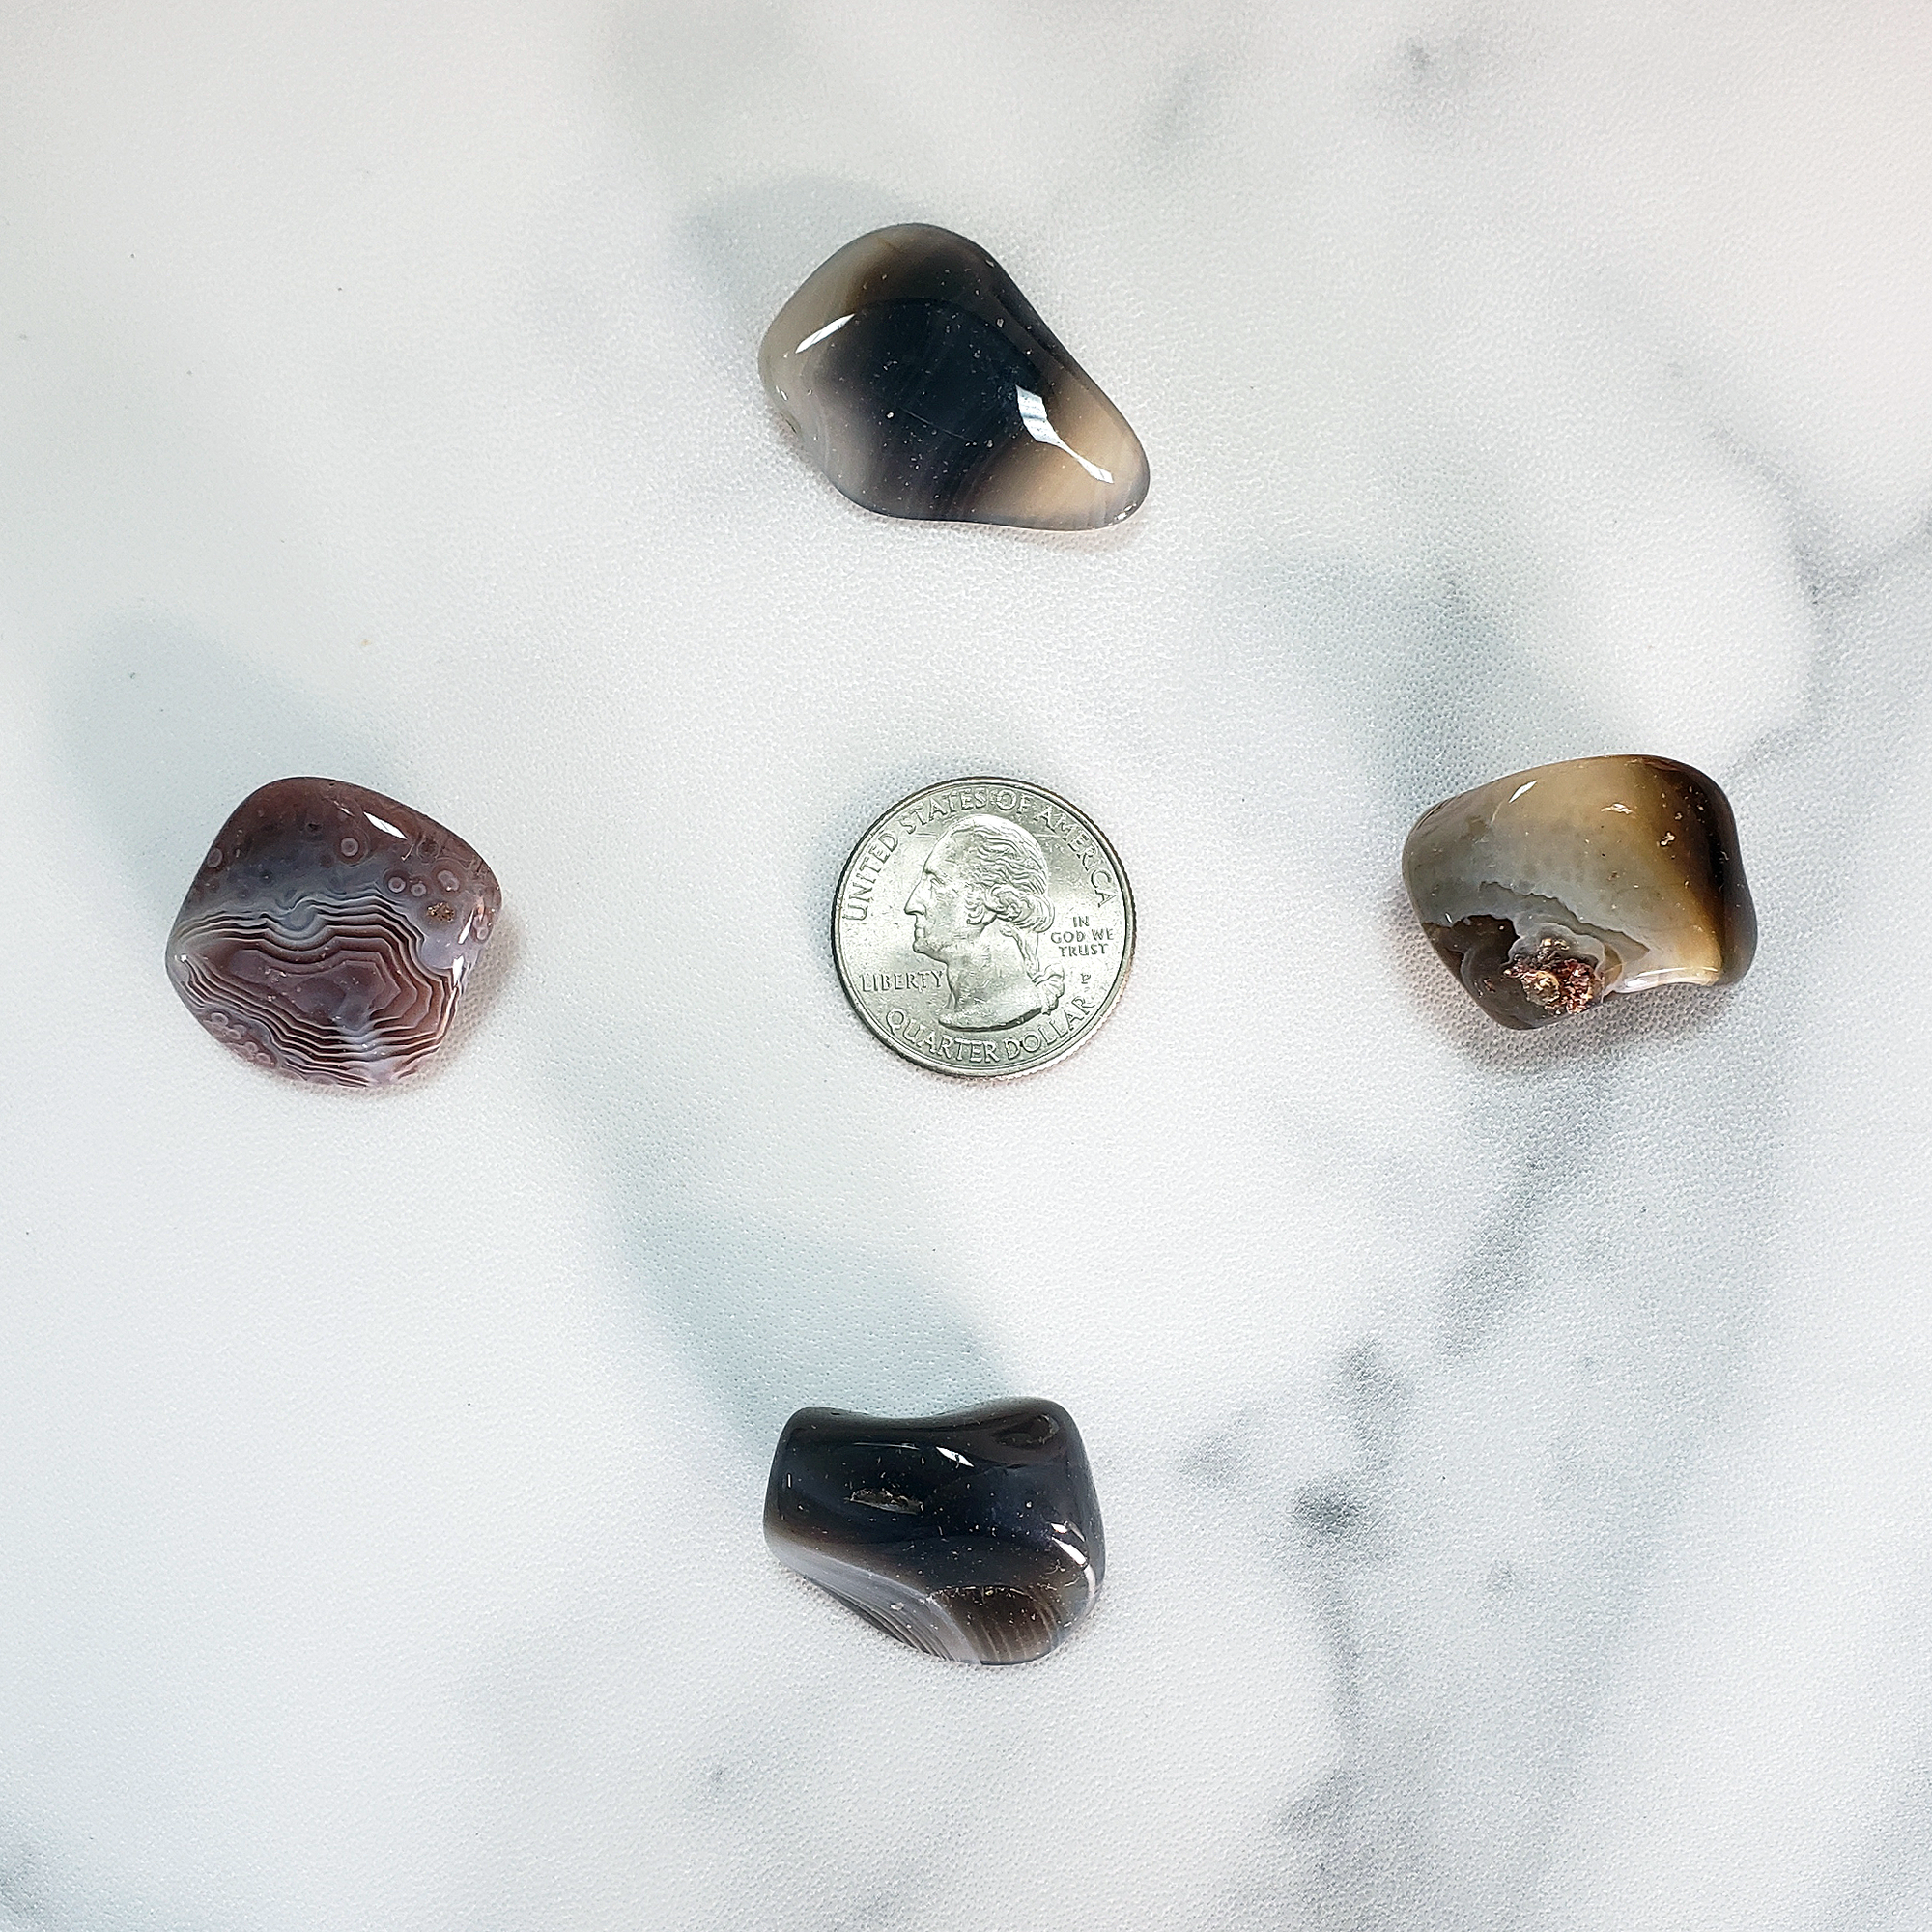 Botswana Agate Tumbled Gemstone - Single Stone - Size Comparison